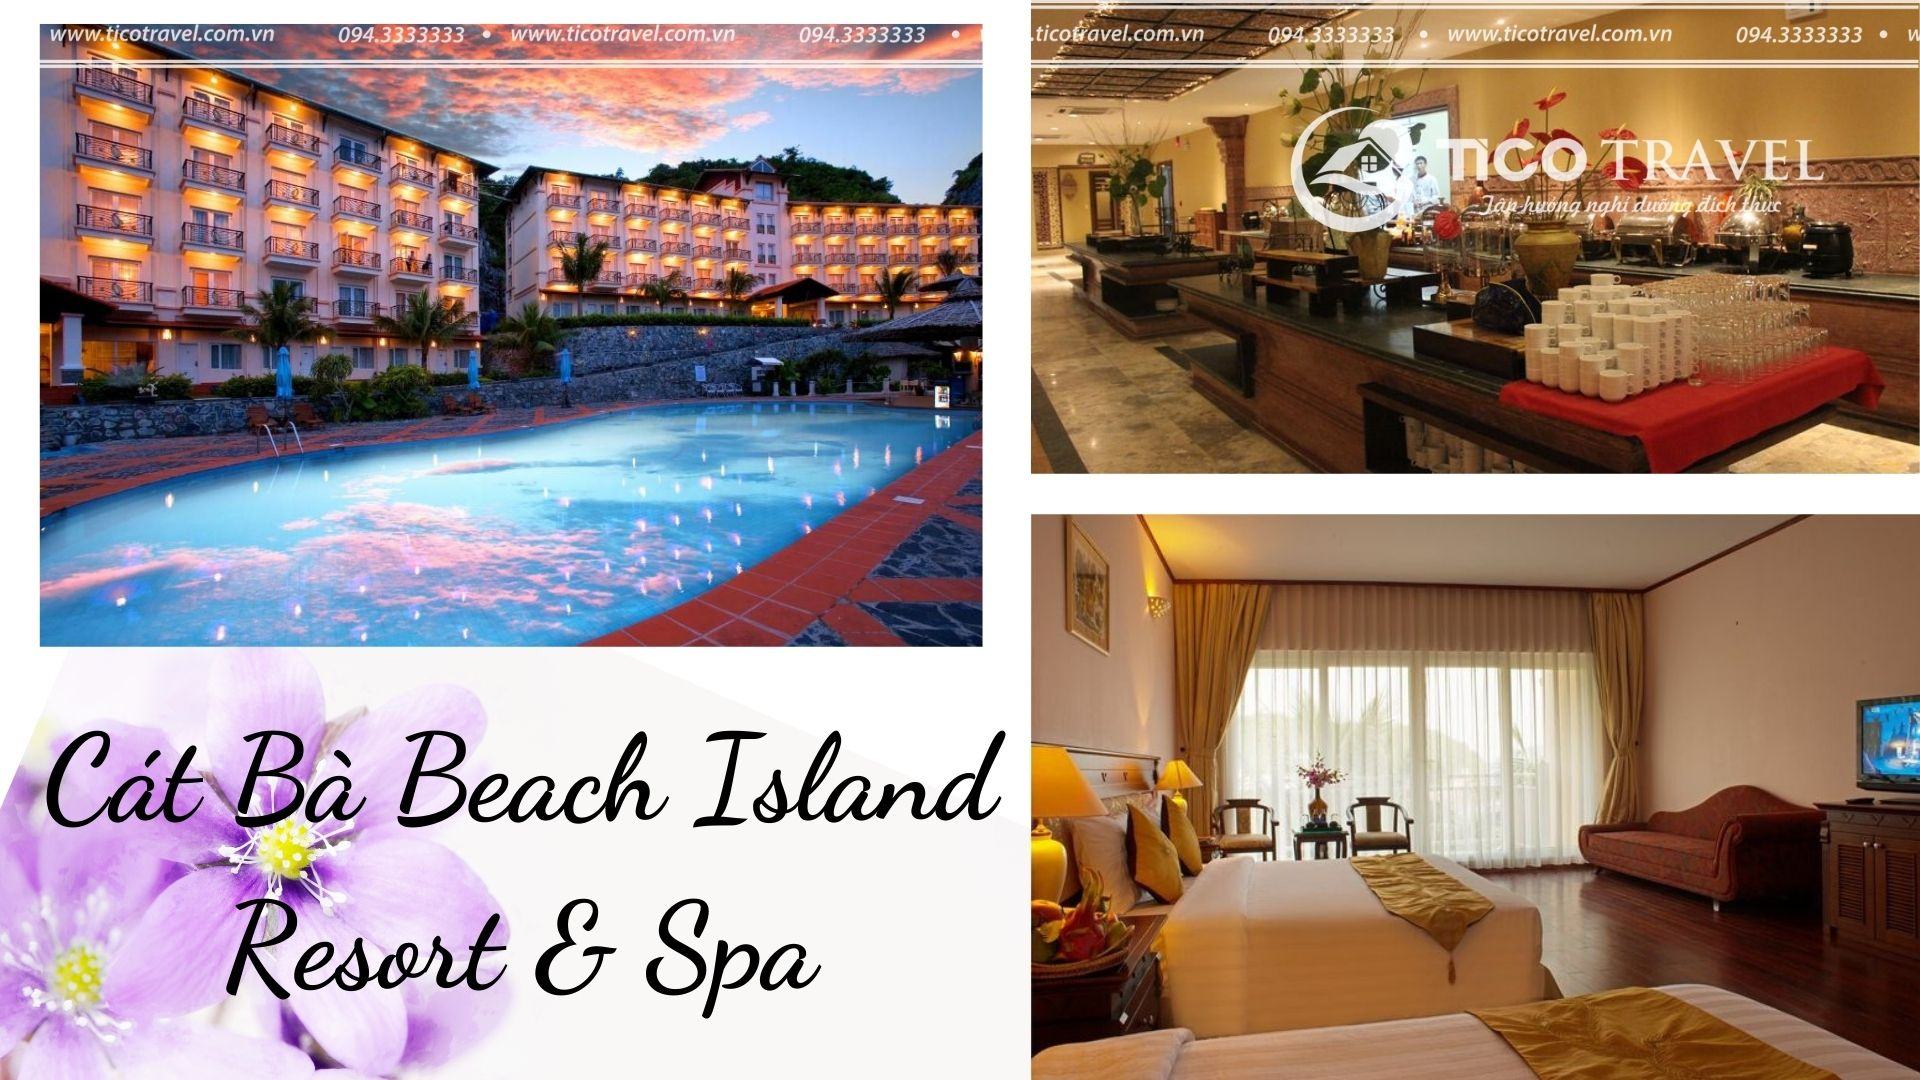 ảnh chụp Cát Bà Beach Island Resort & Spa